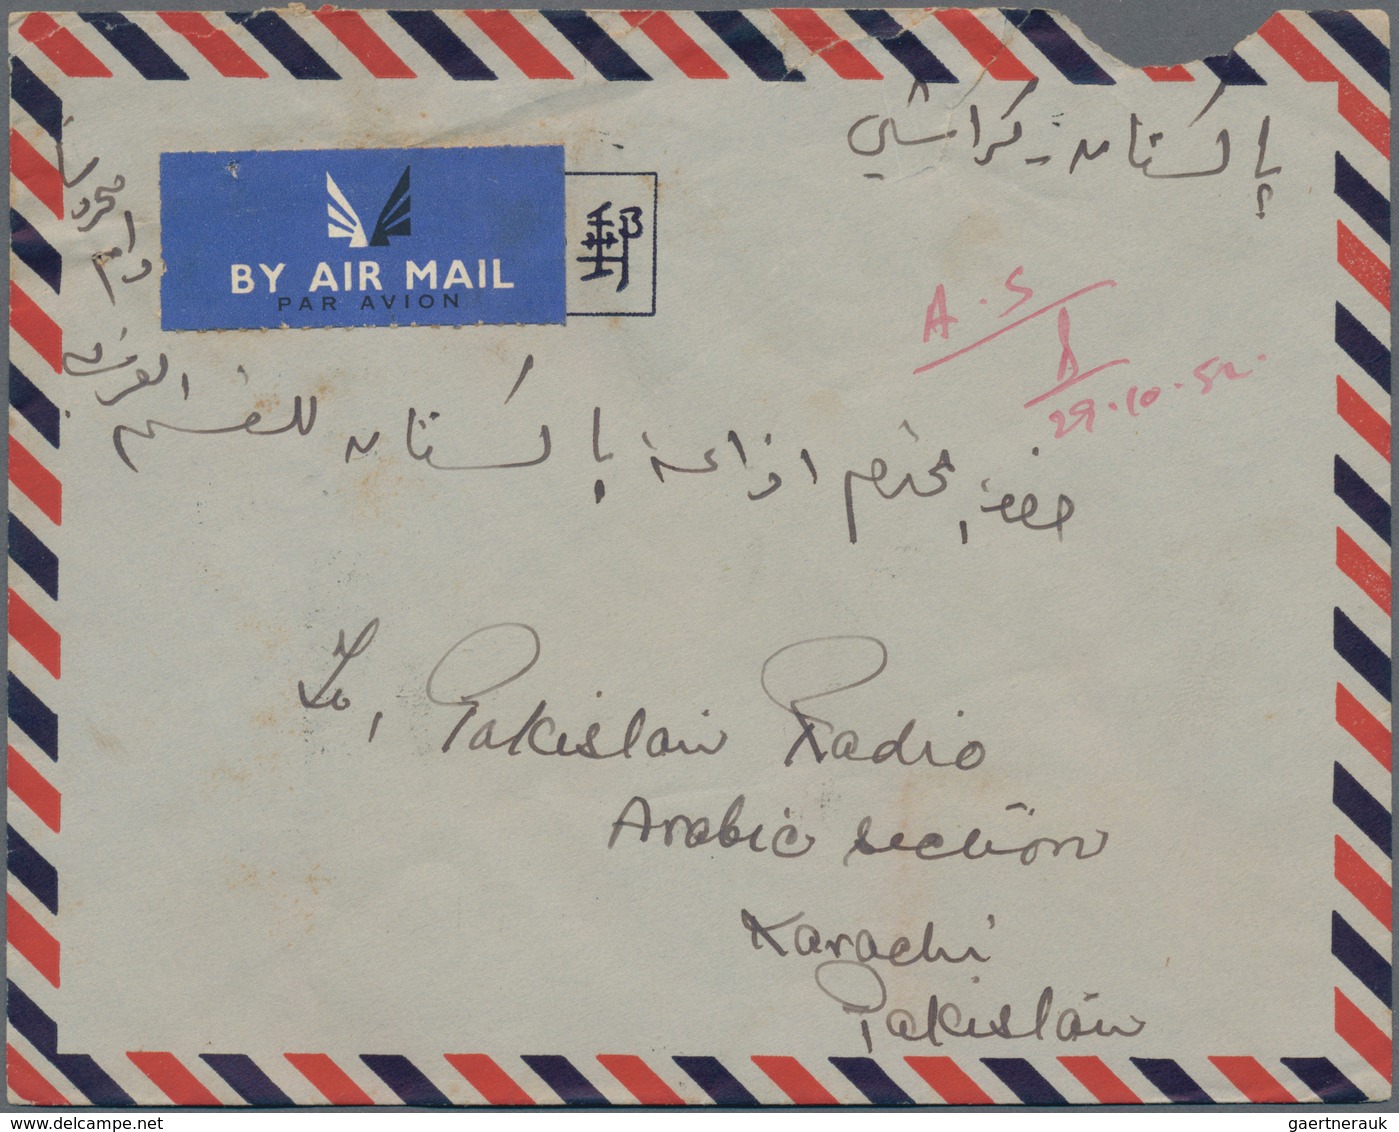 Katar / Qatar: 1952 Airmail Cover From Qatar To Karachi, Pakistan Via Bahrain, Endorsed On Reverse " - Qatar